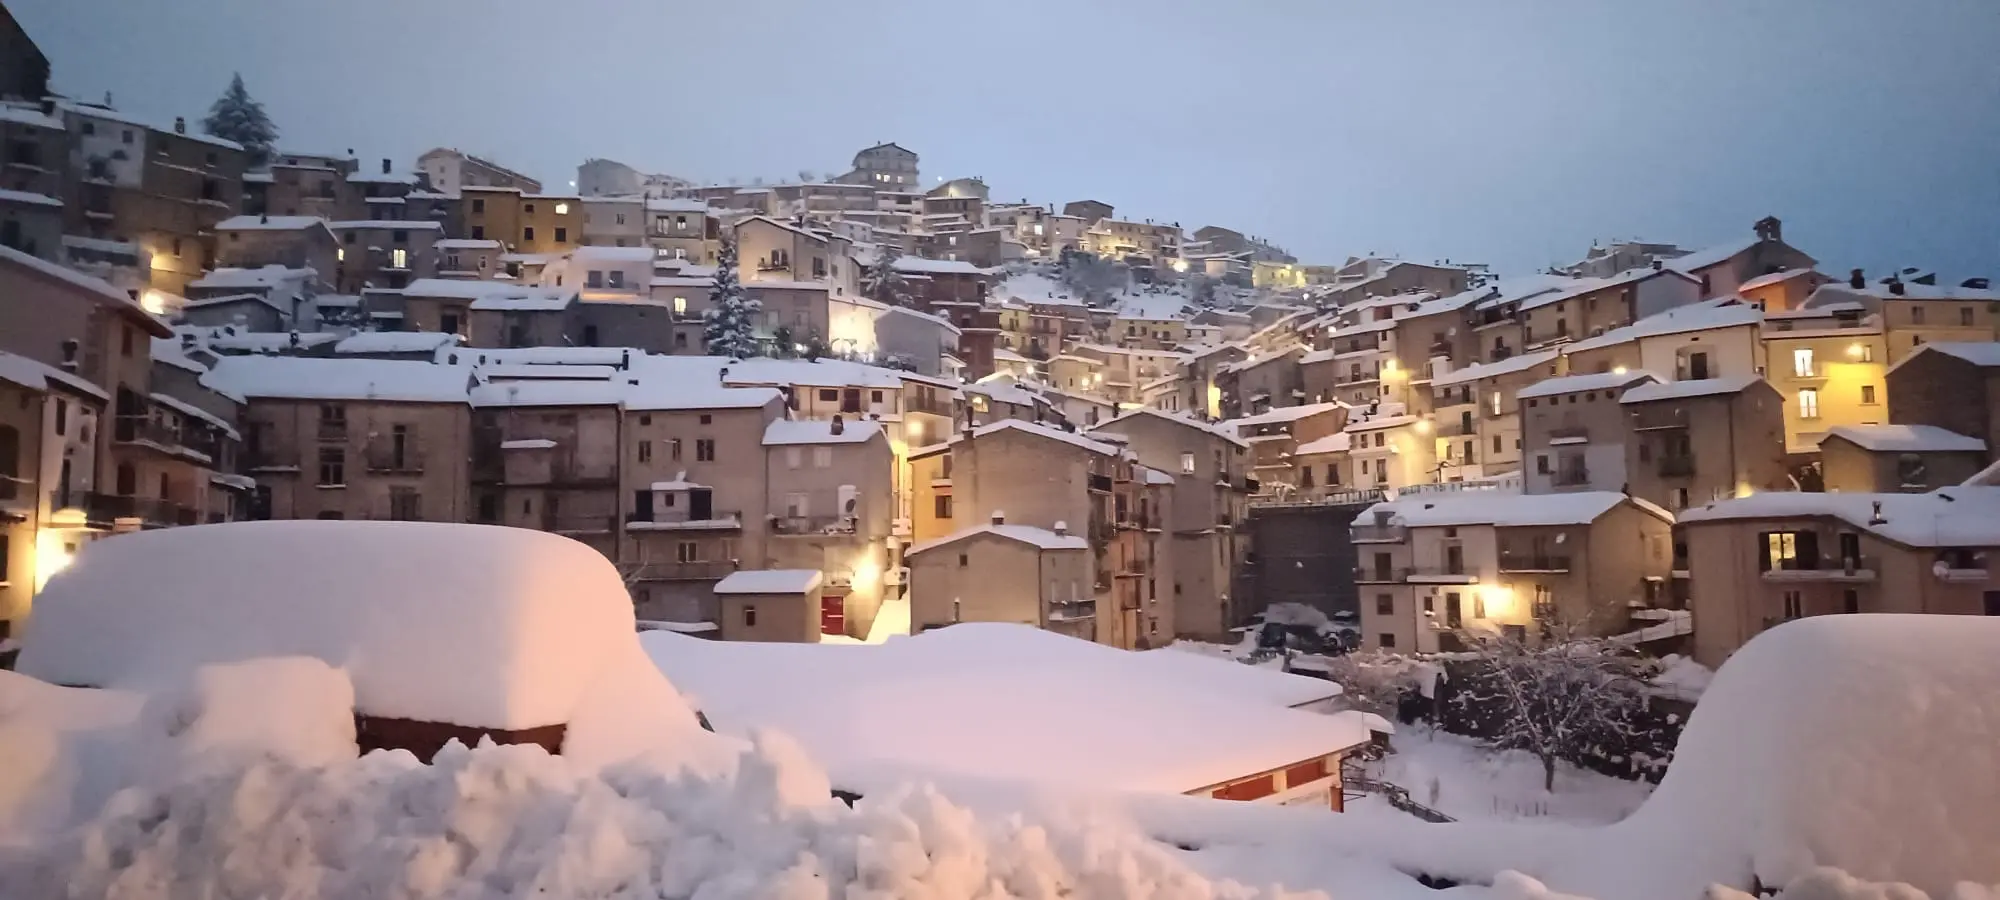 neve a san giovanni in fiore - Dove posso trovare la neve in Toscana